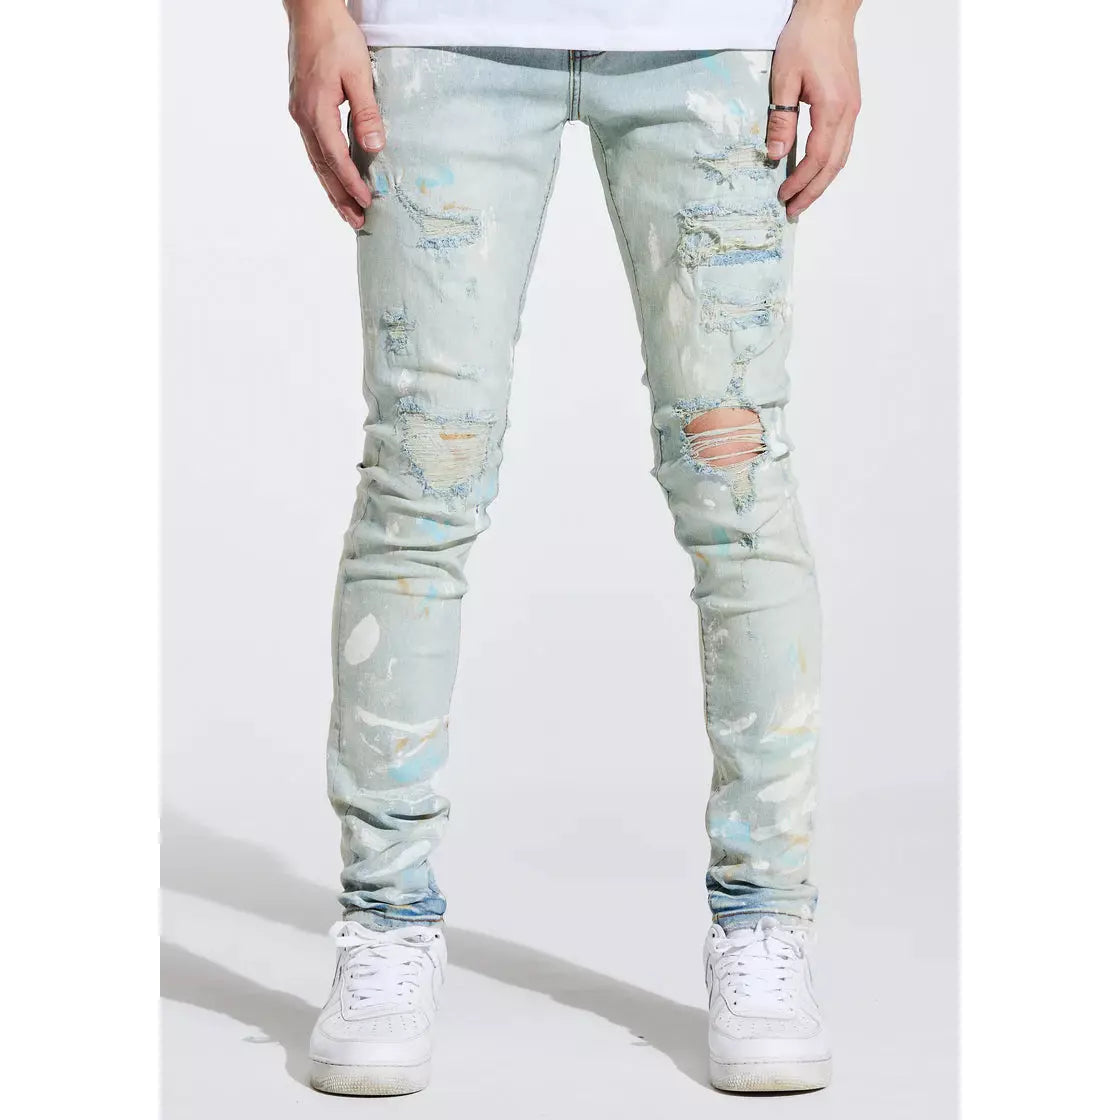 Crysp Denim Atlantic Blue Paint Denim Jeans (CRYSPSP221-104)